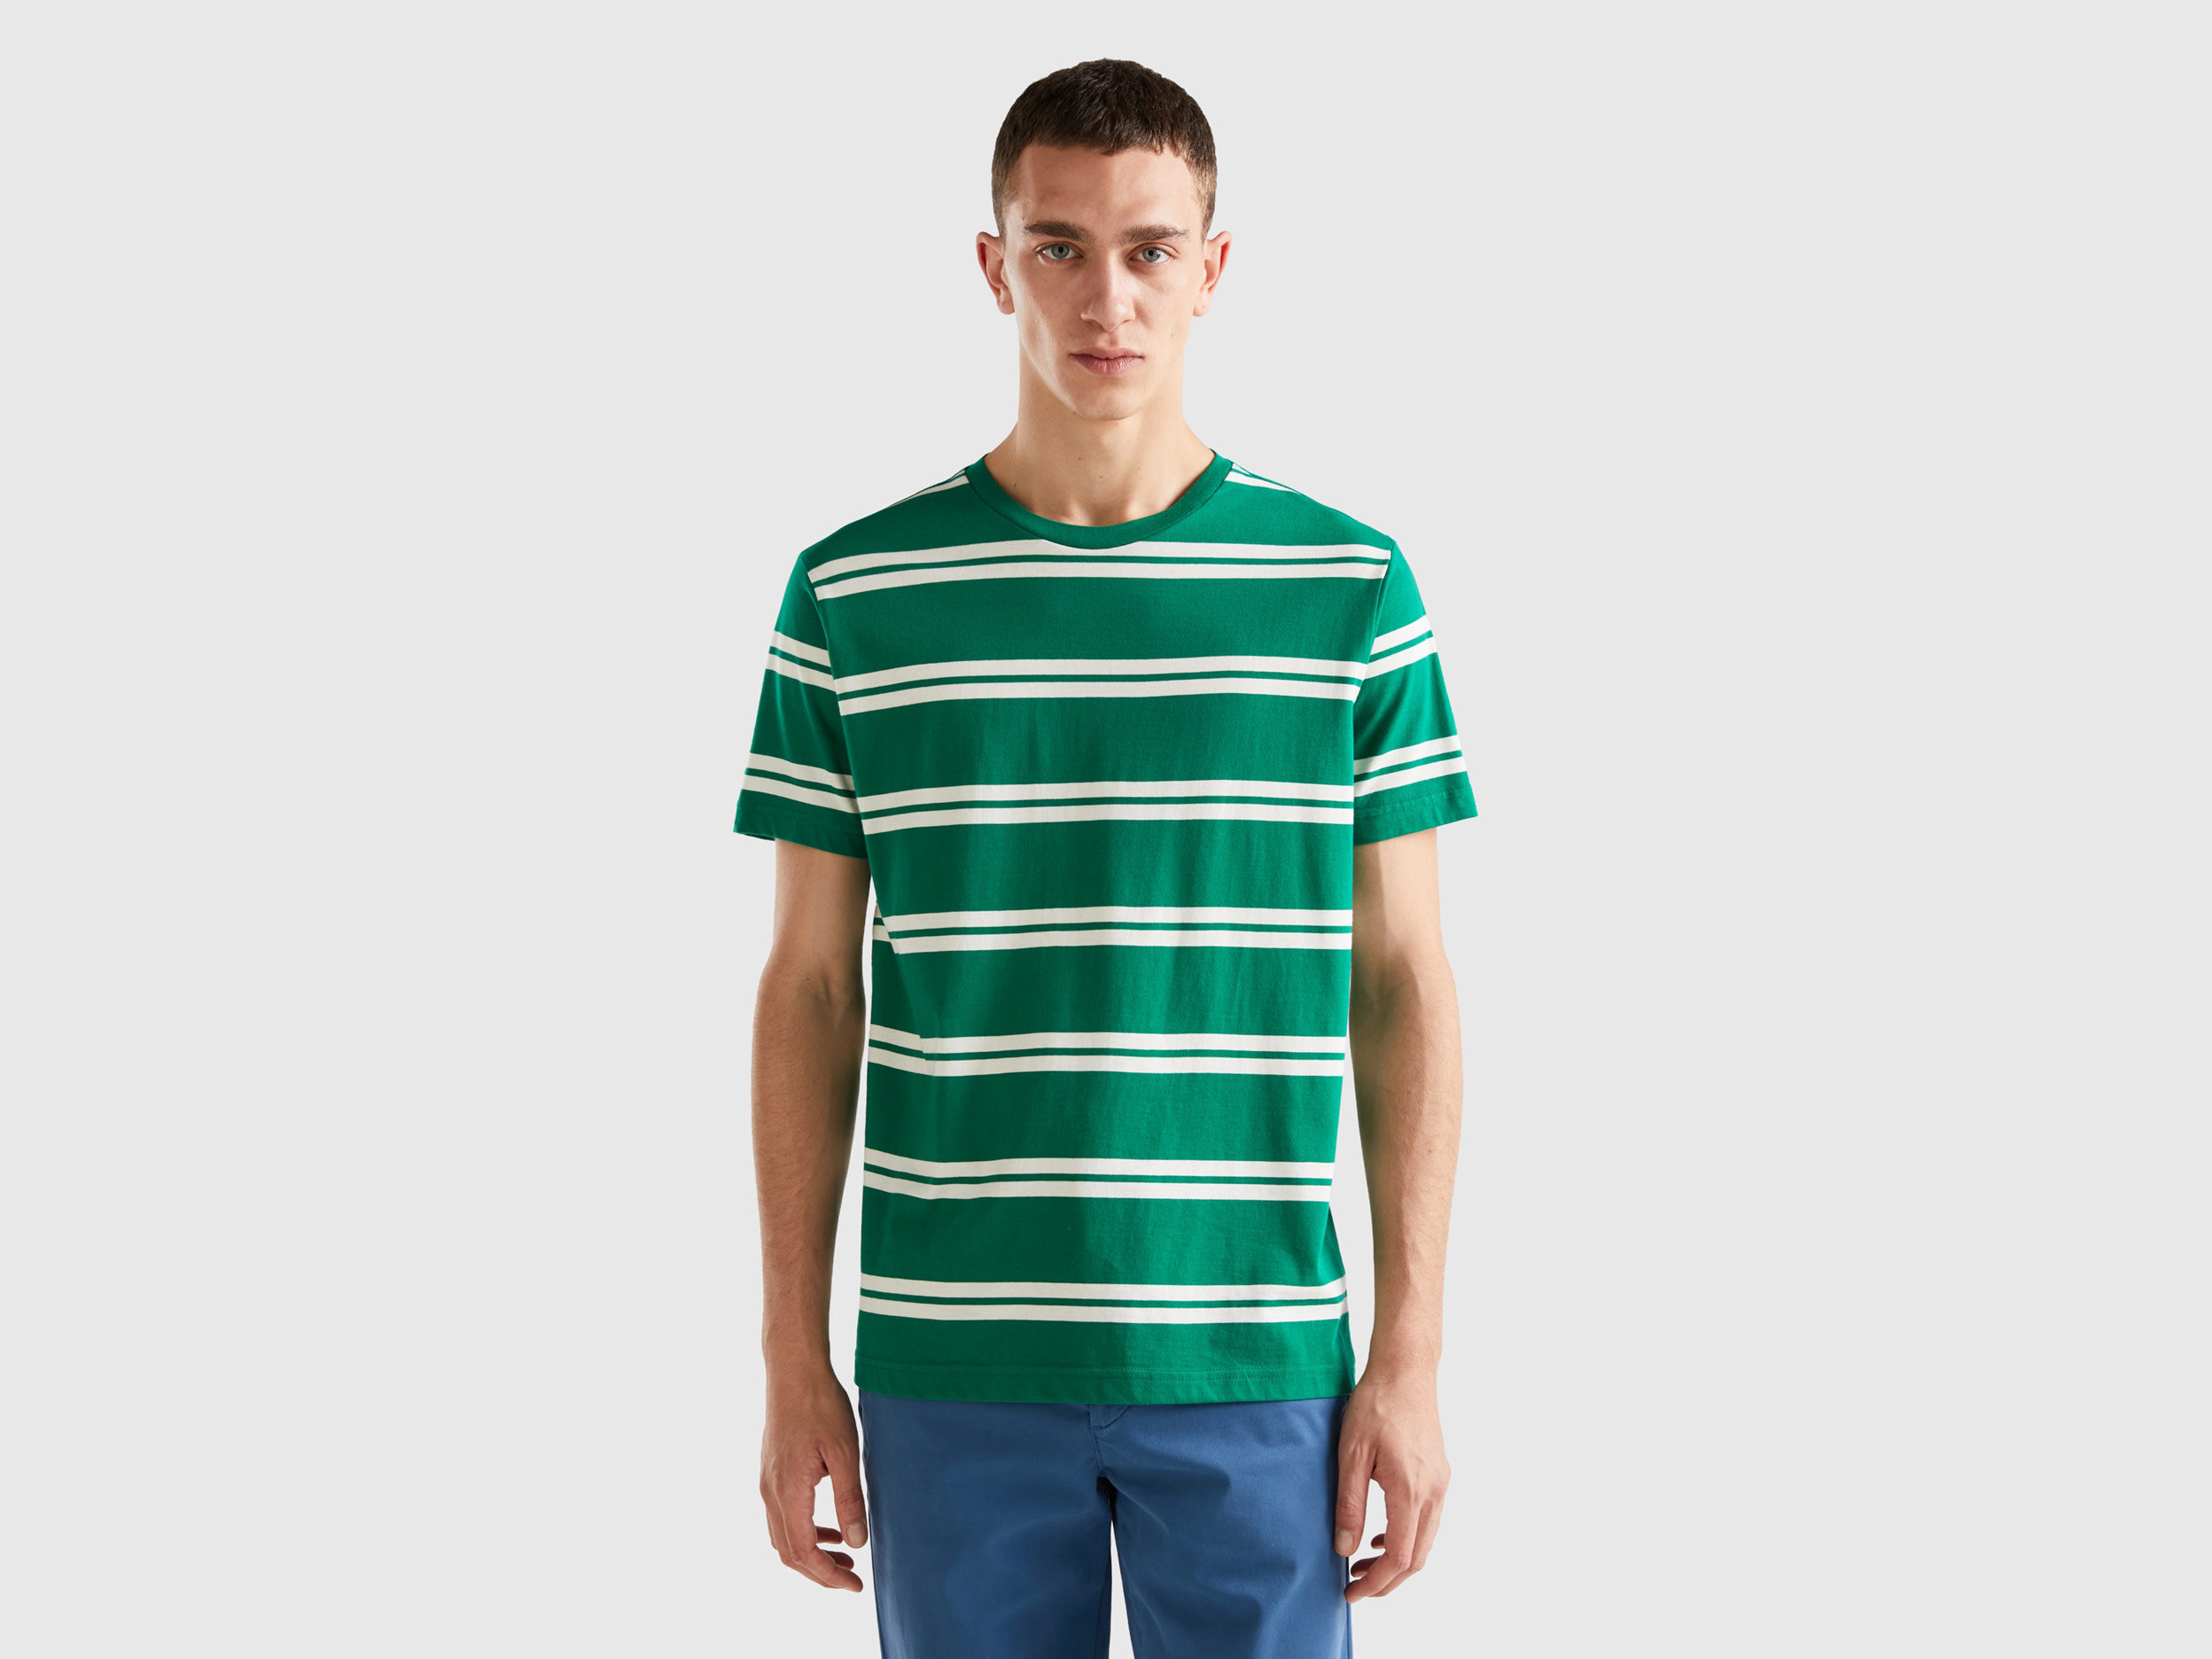 Benetton, Striped Short Sleeve T-shirt, size S, Green, Men